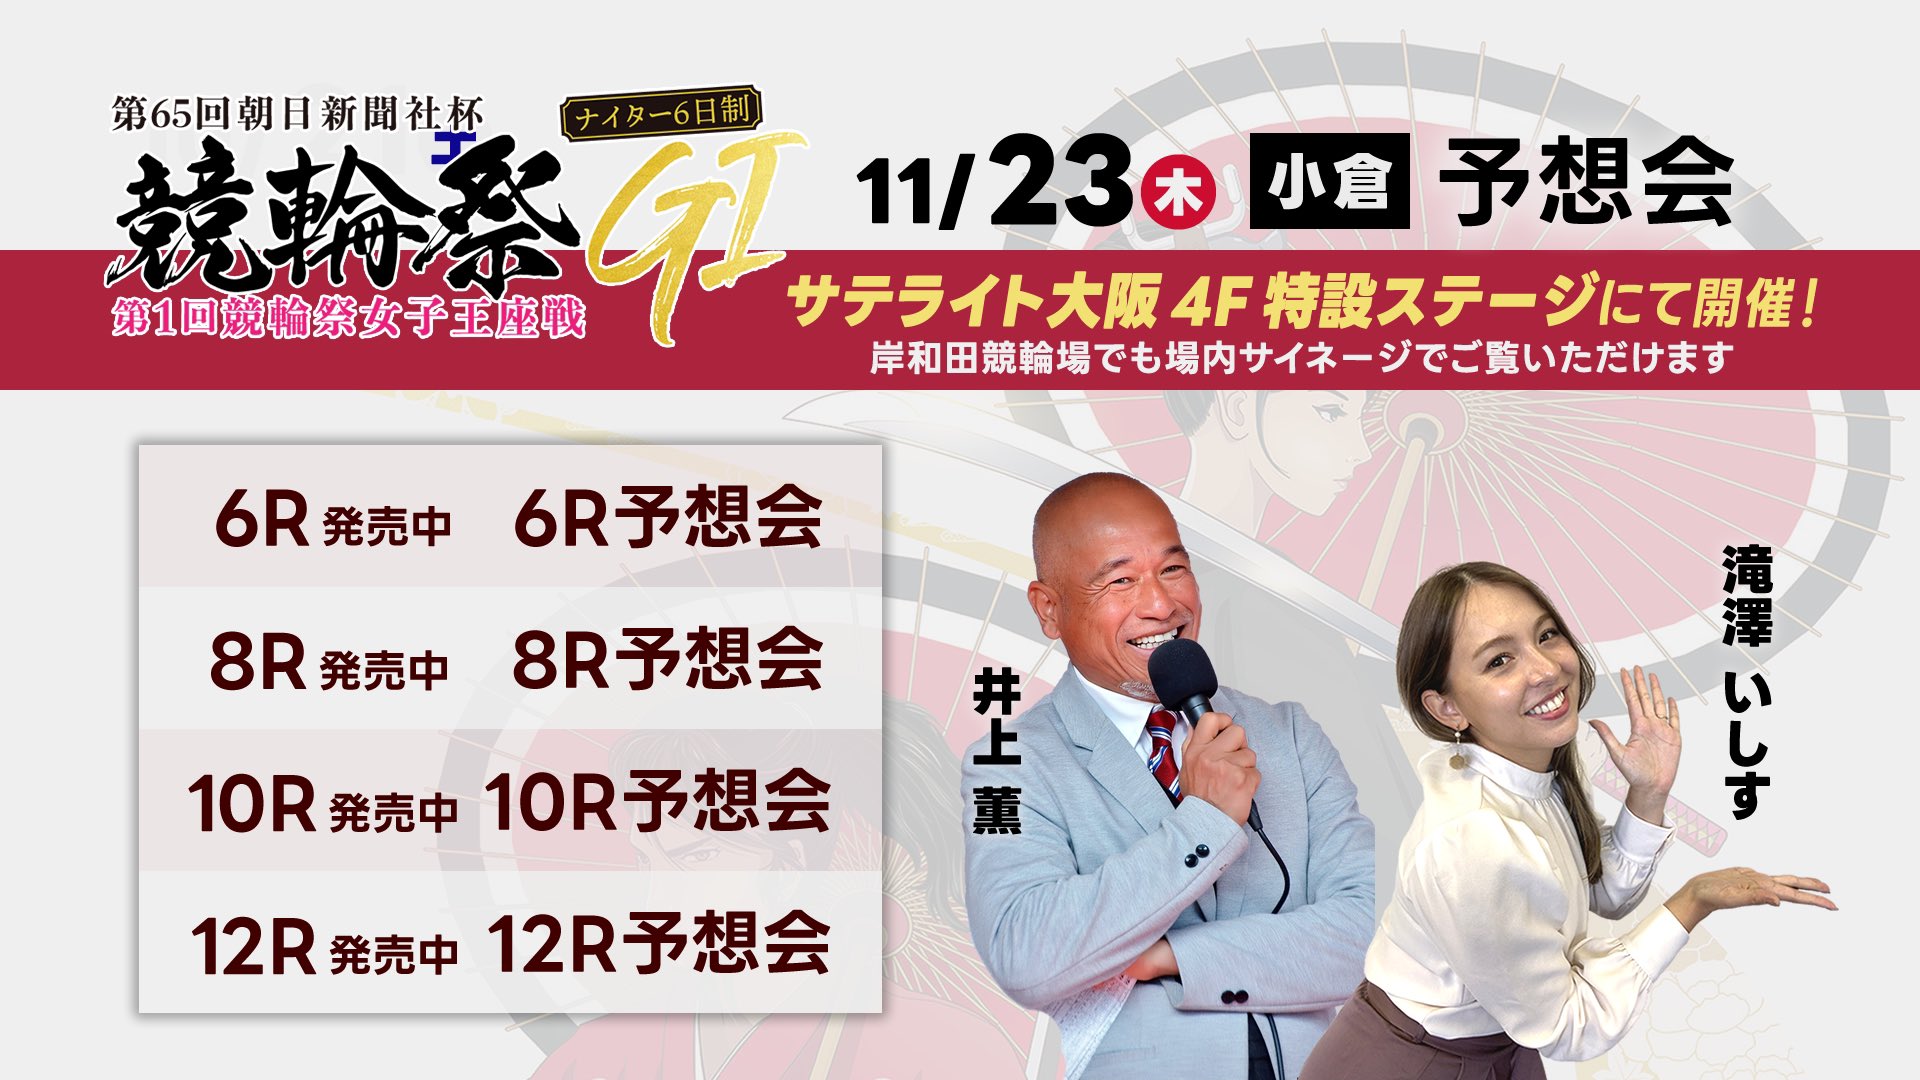 11月23日 サテライト大阪 競輪祭 予想会